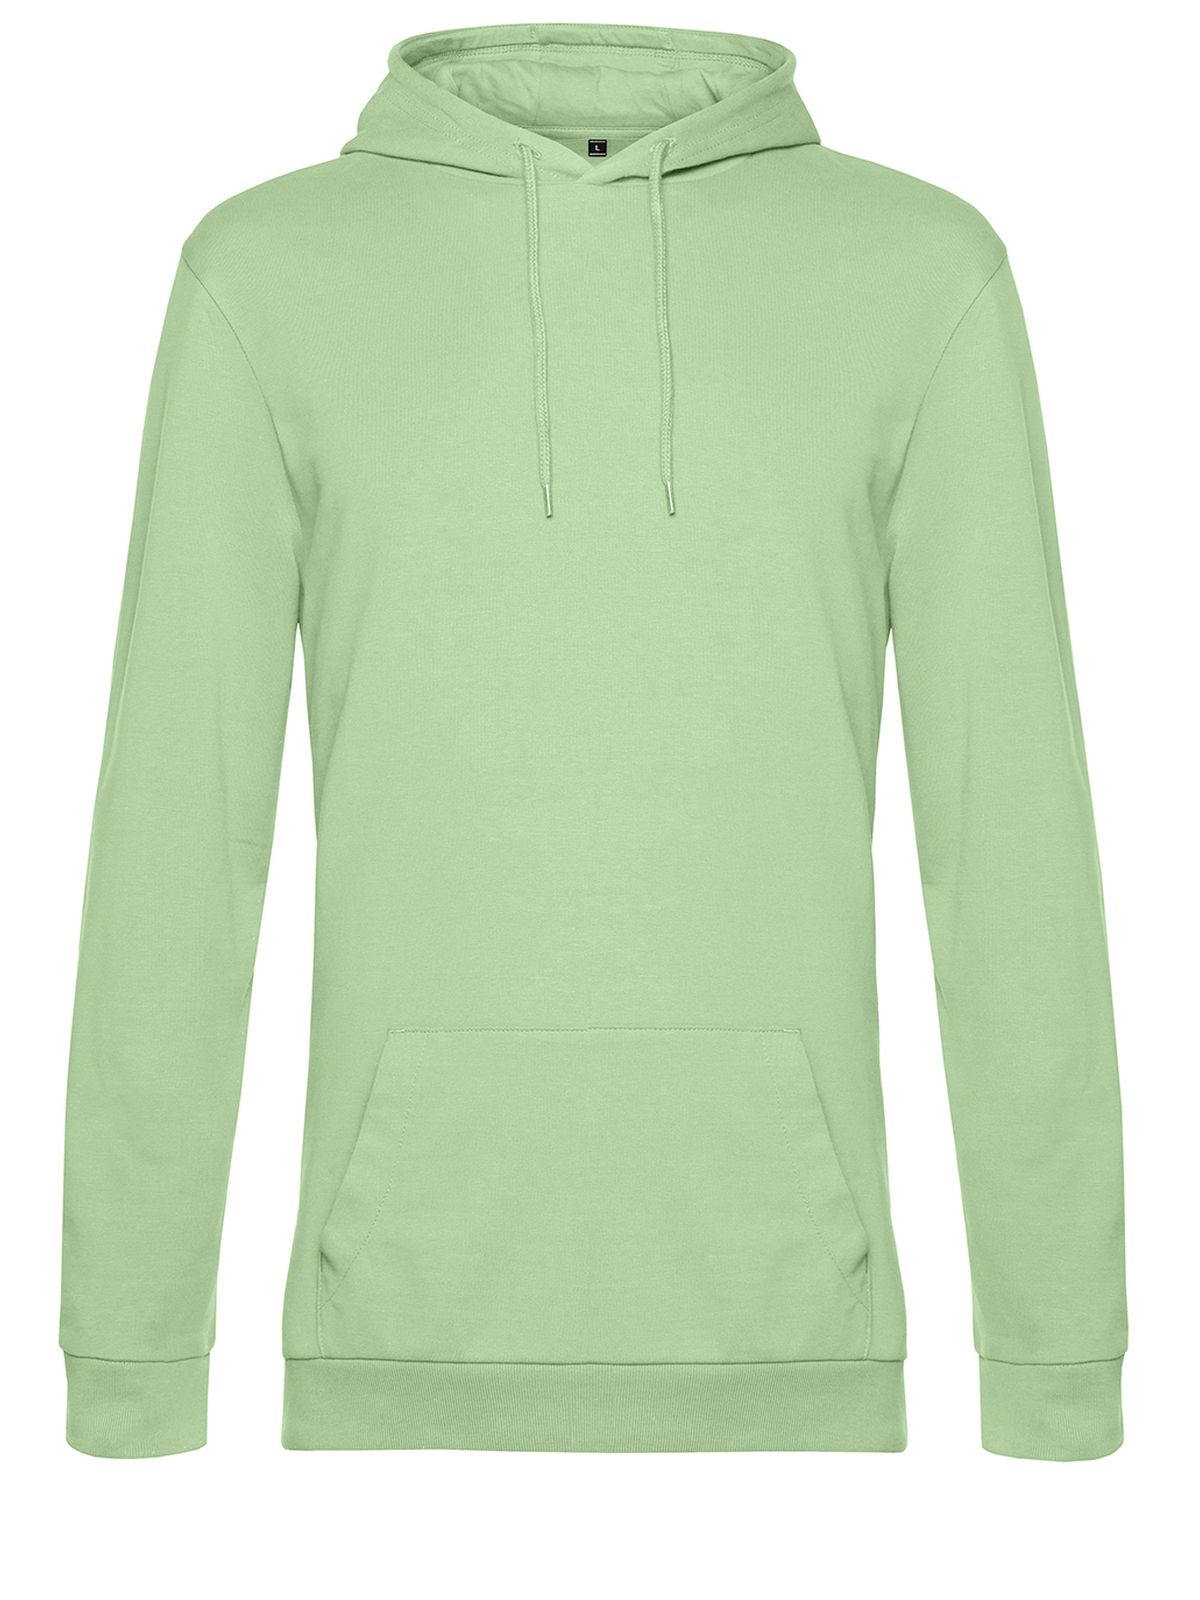 hoodie-light-jade.webp